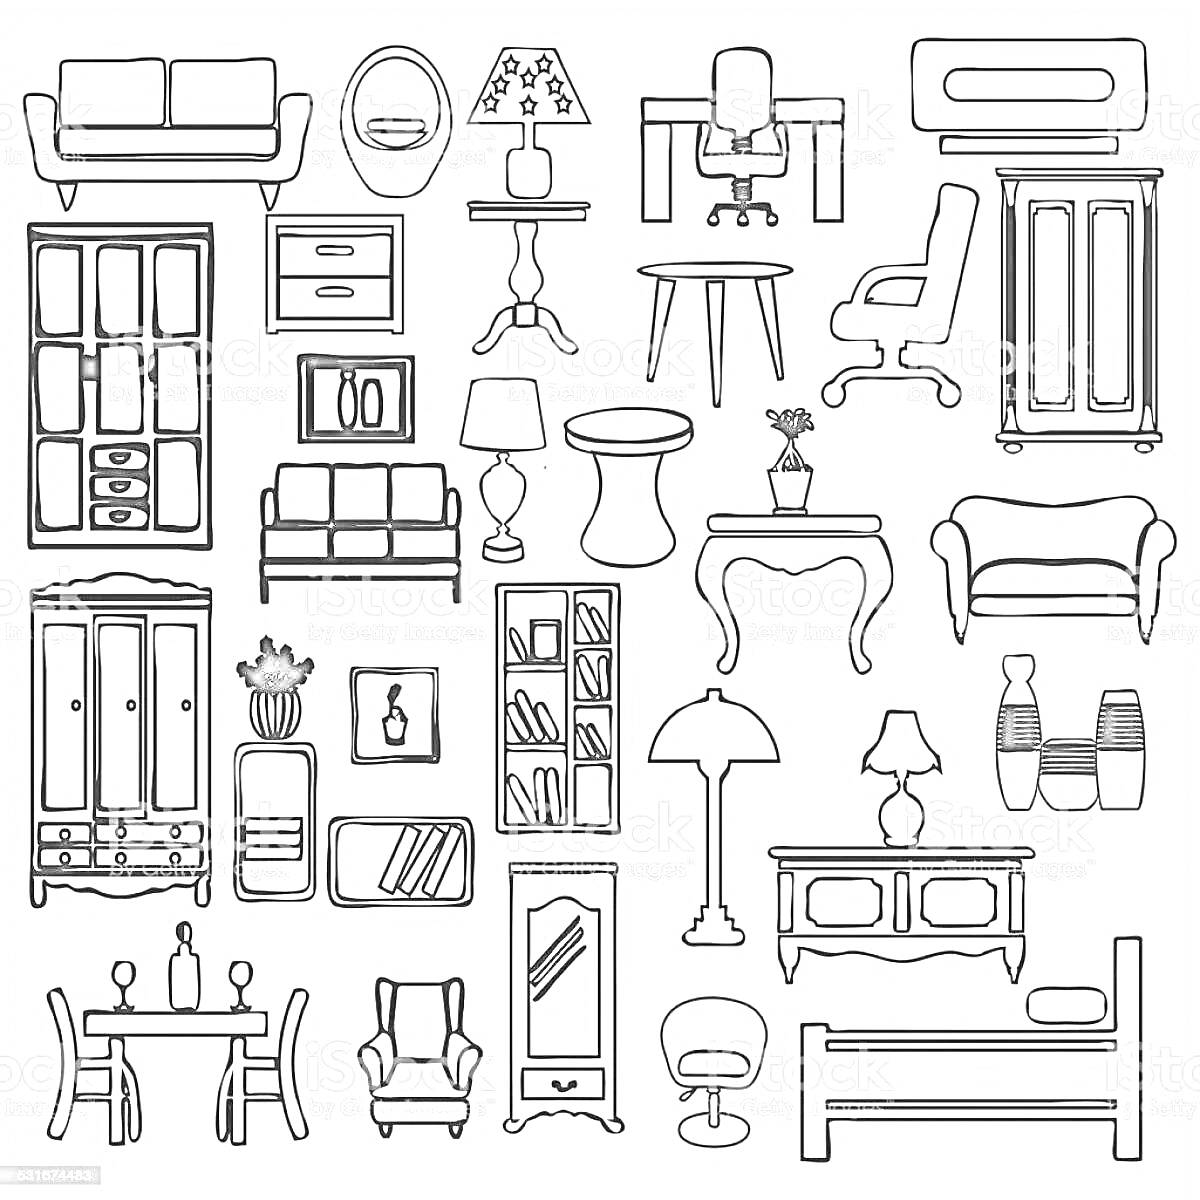 Раскраска Набор предметов интерьера (диваны, кресла, столы, лампы и другие элементы мебели)